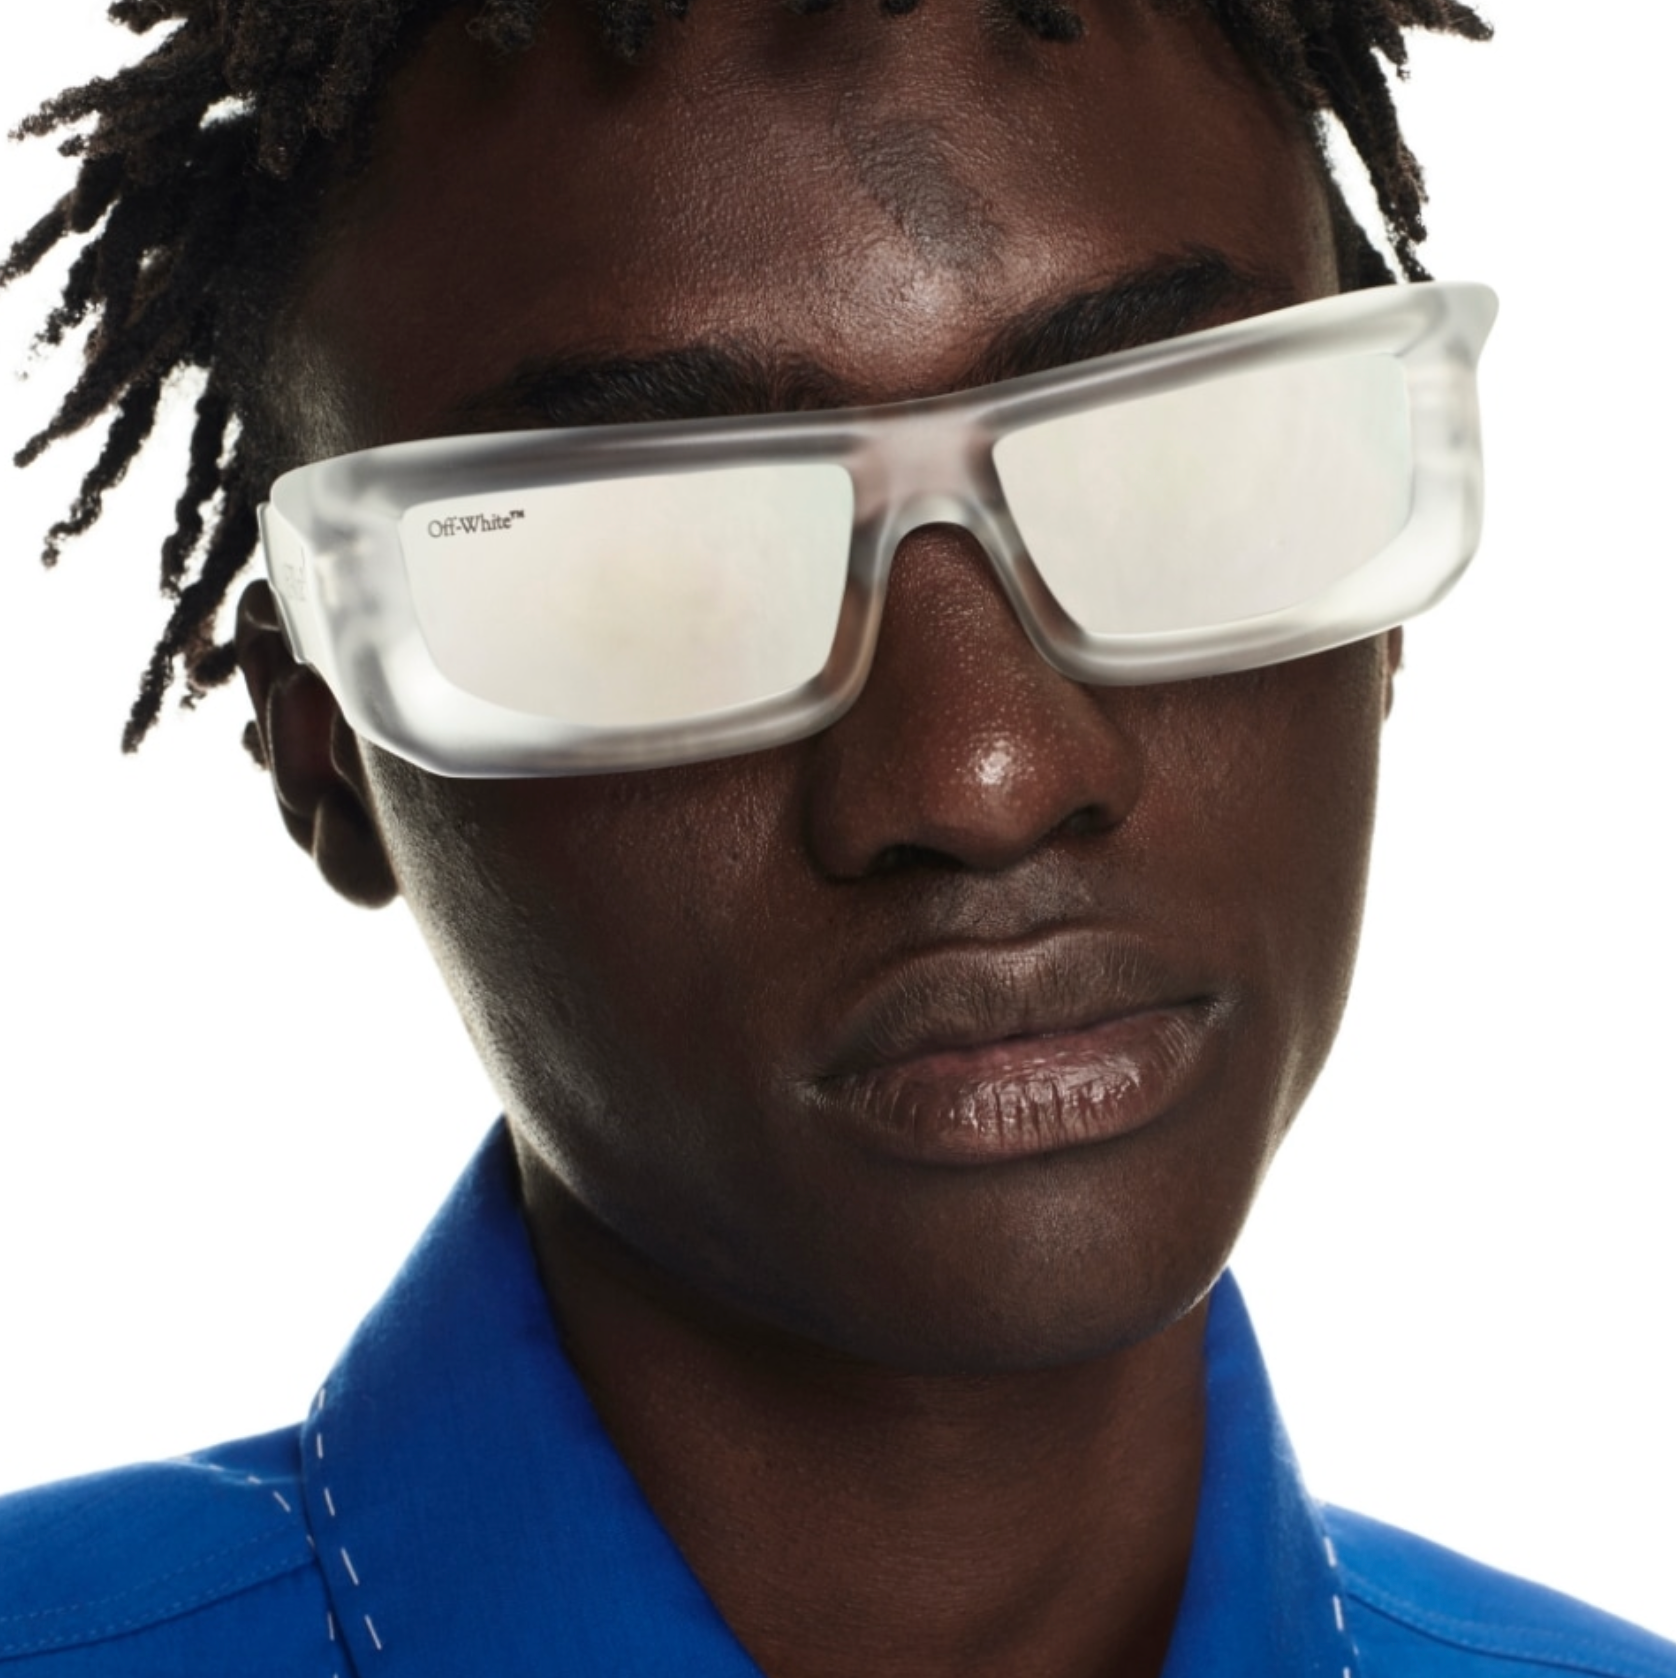 Off-White Vulcanite Sunglasses